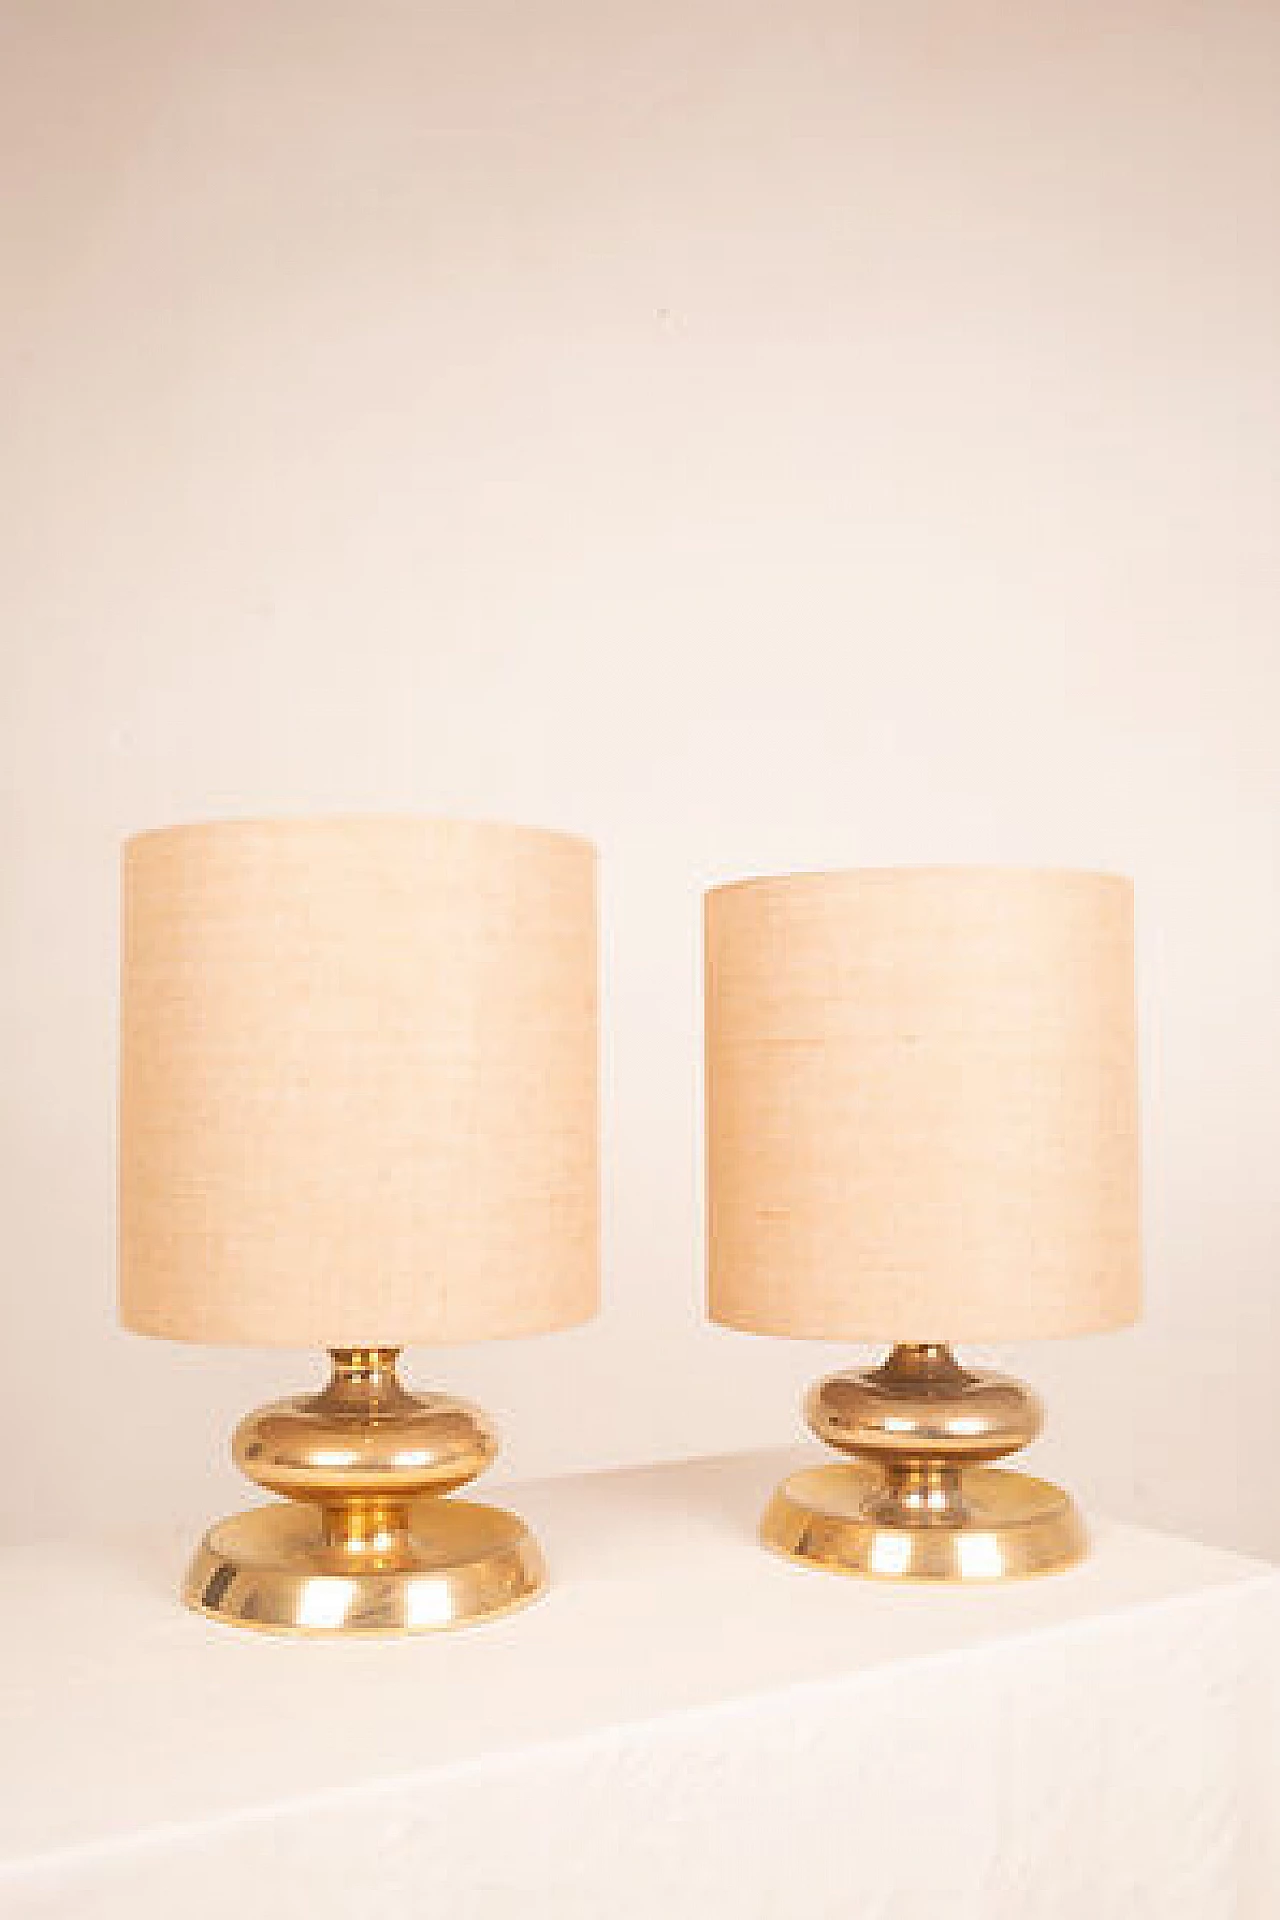 Coppia di lampade da tavolo C-363 Edizione Oro24K di Luci, anni '70 10